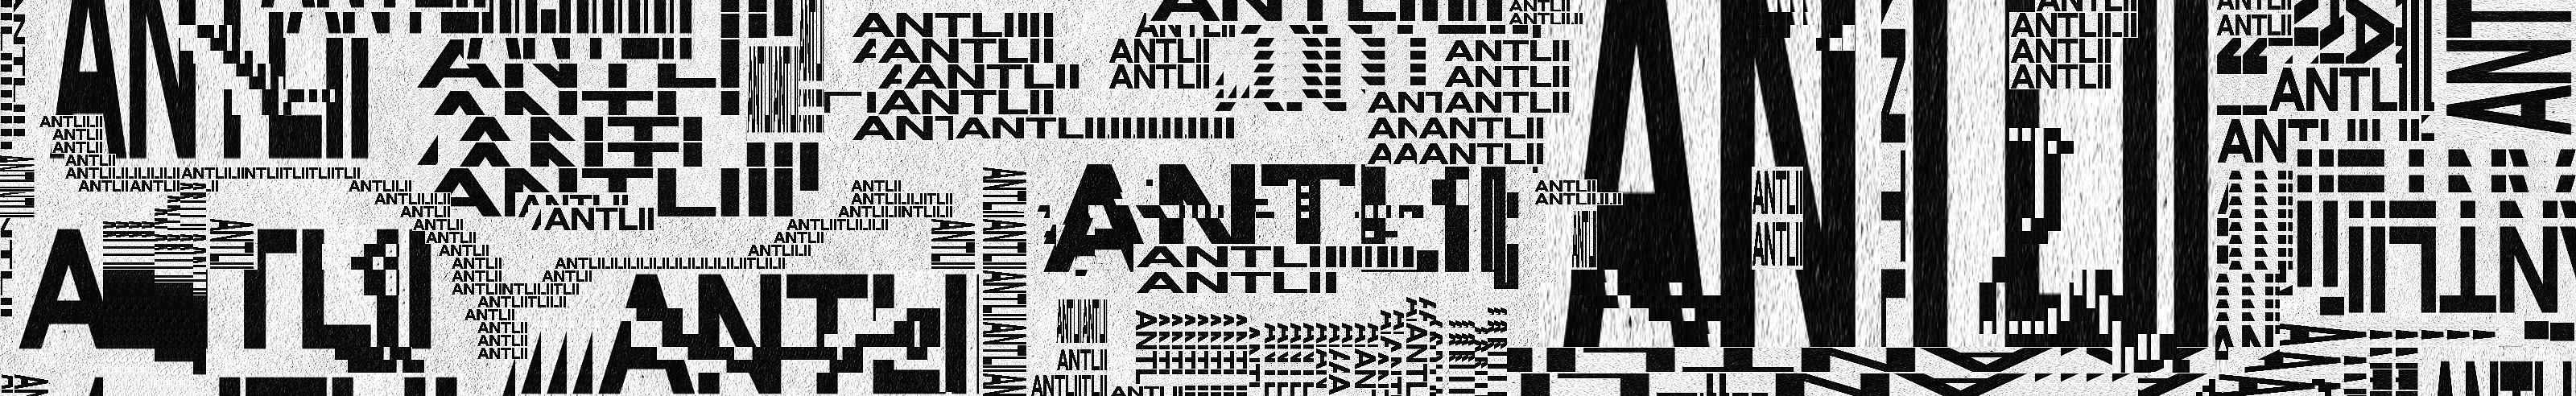 Antlii 🇺🇦 profil başlığı